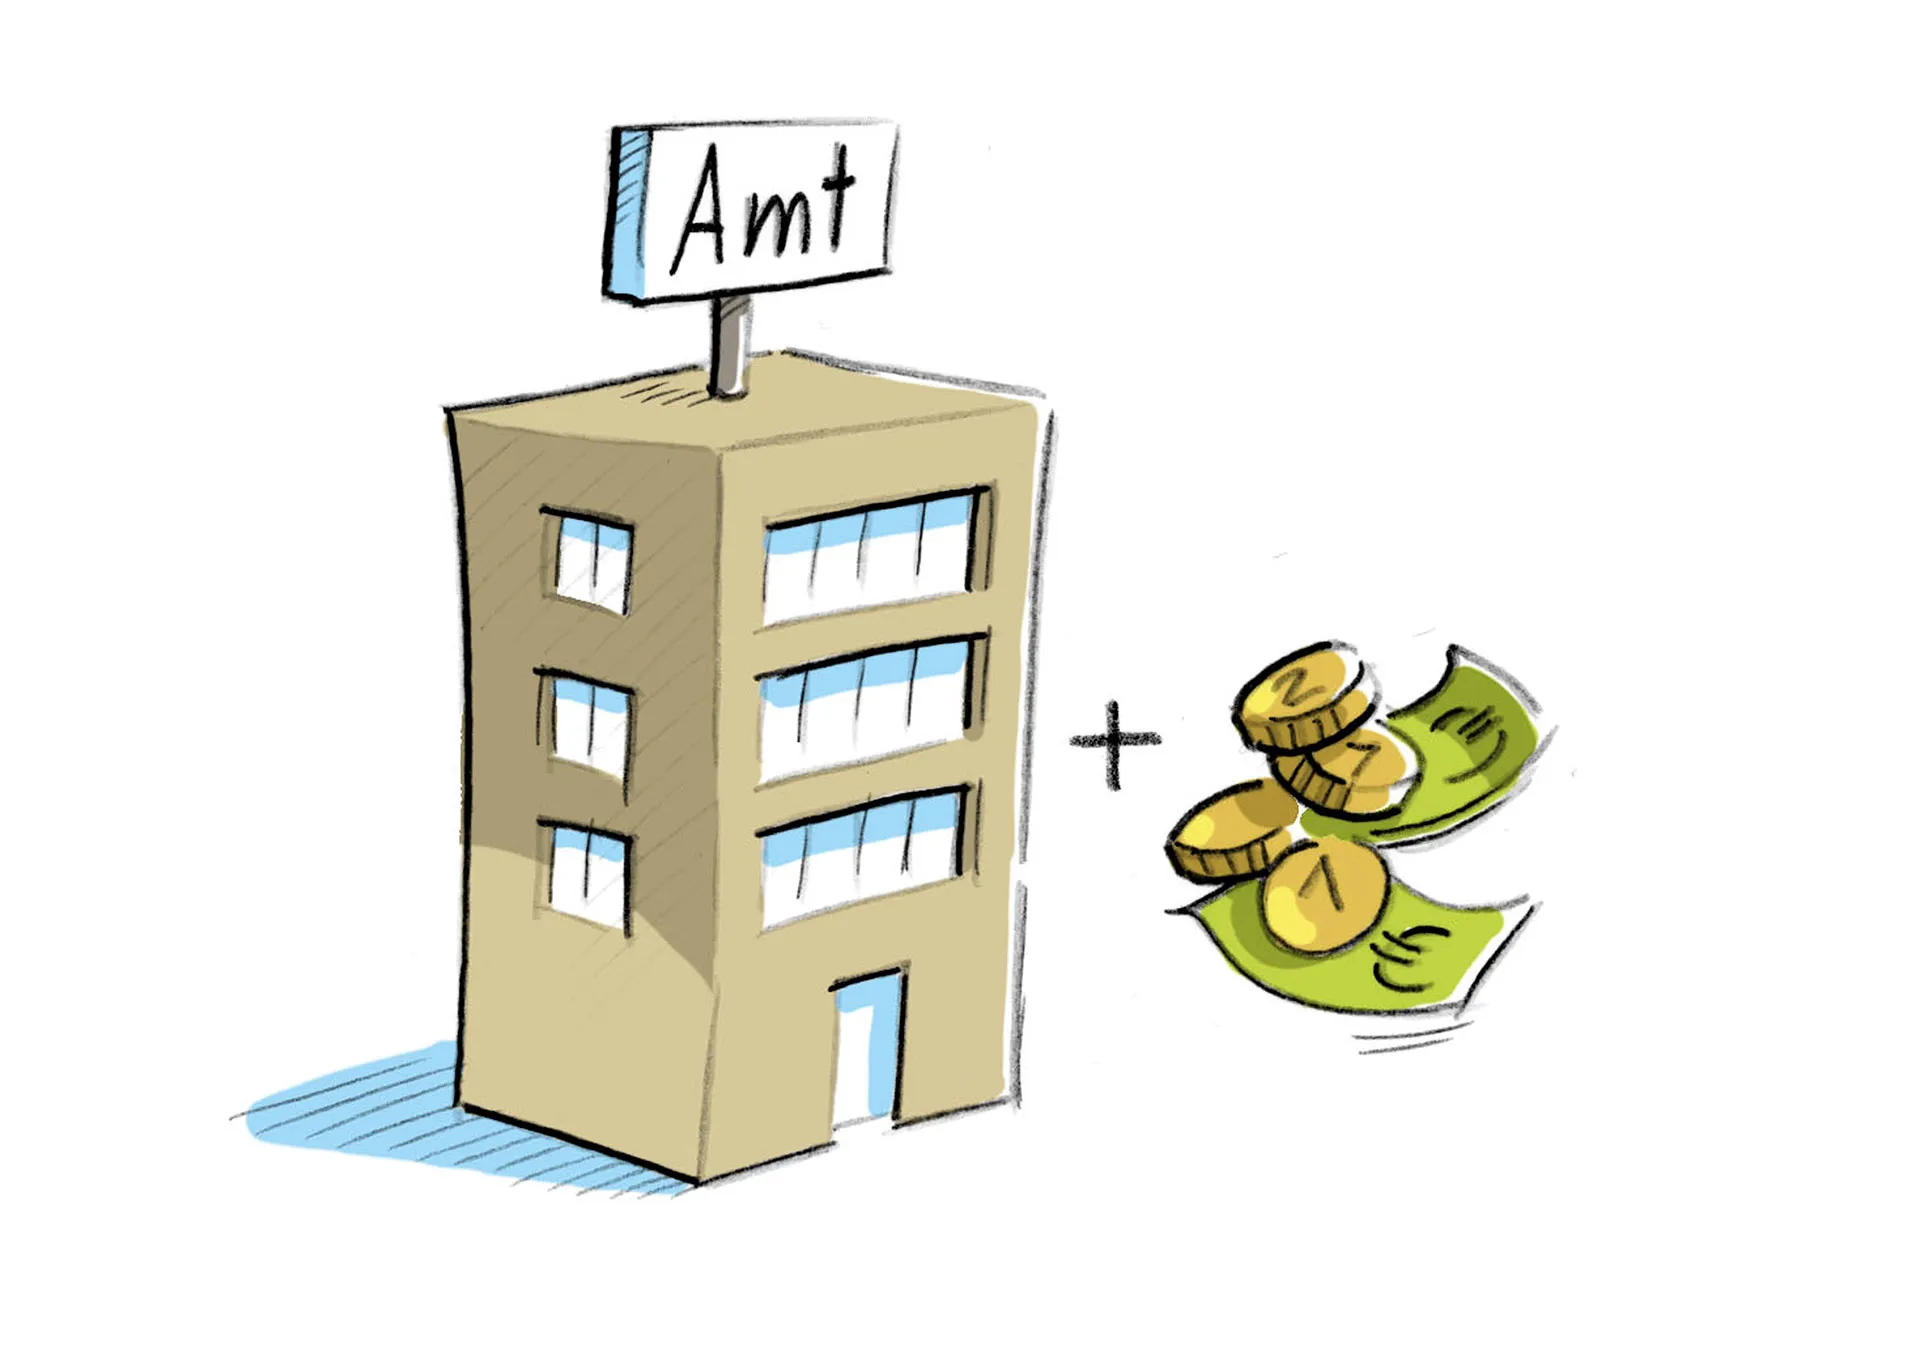 Bild: Amts-Gebäude und Geldscheine und Münzen